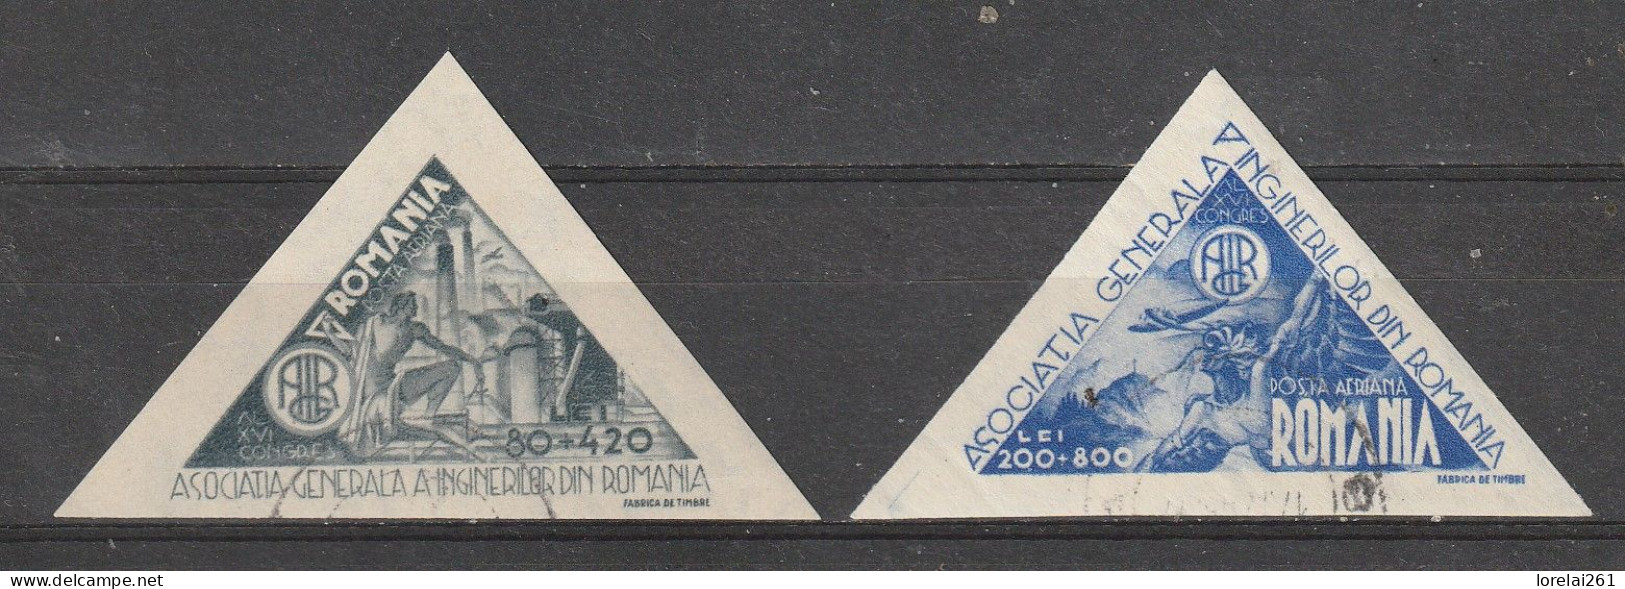 1945 -  Association Générale Des Ingénieurs Mi No 913/914 - Used Stamps